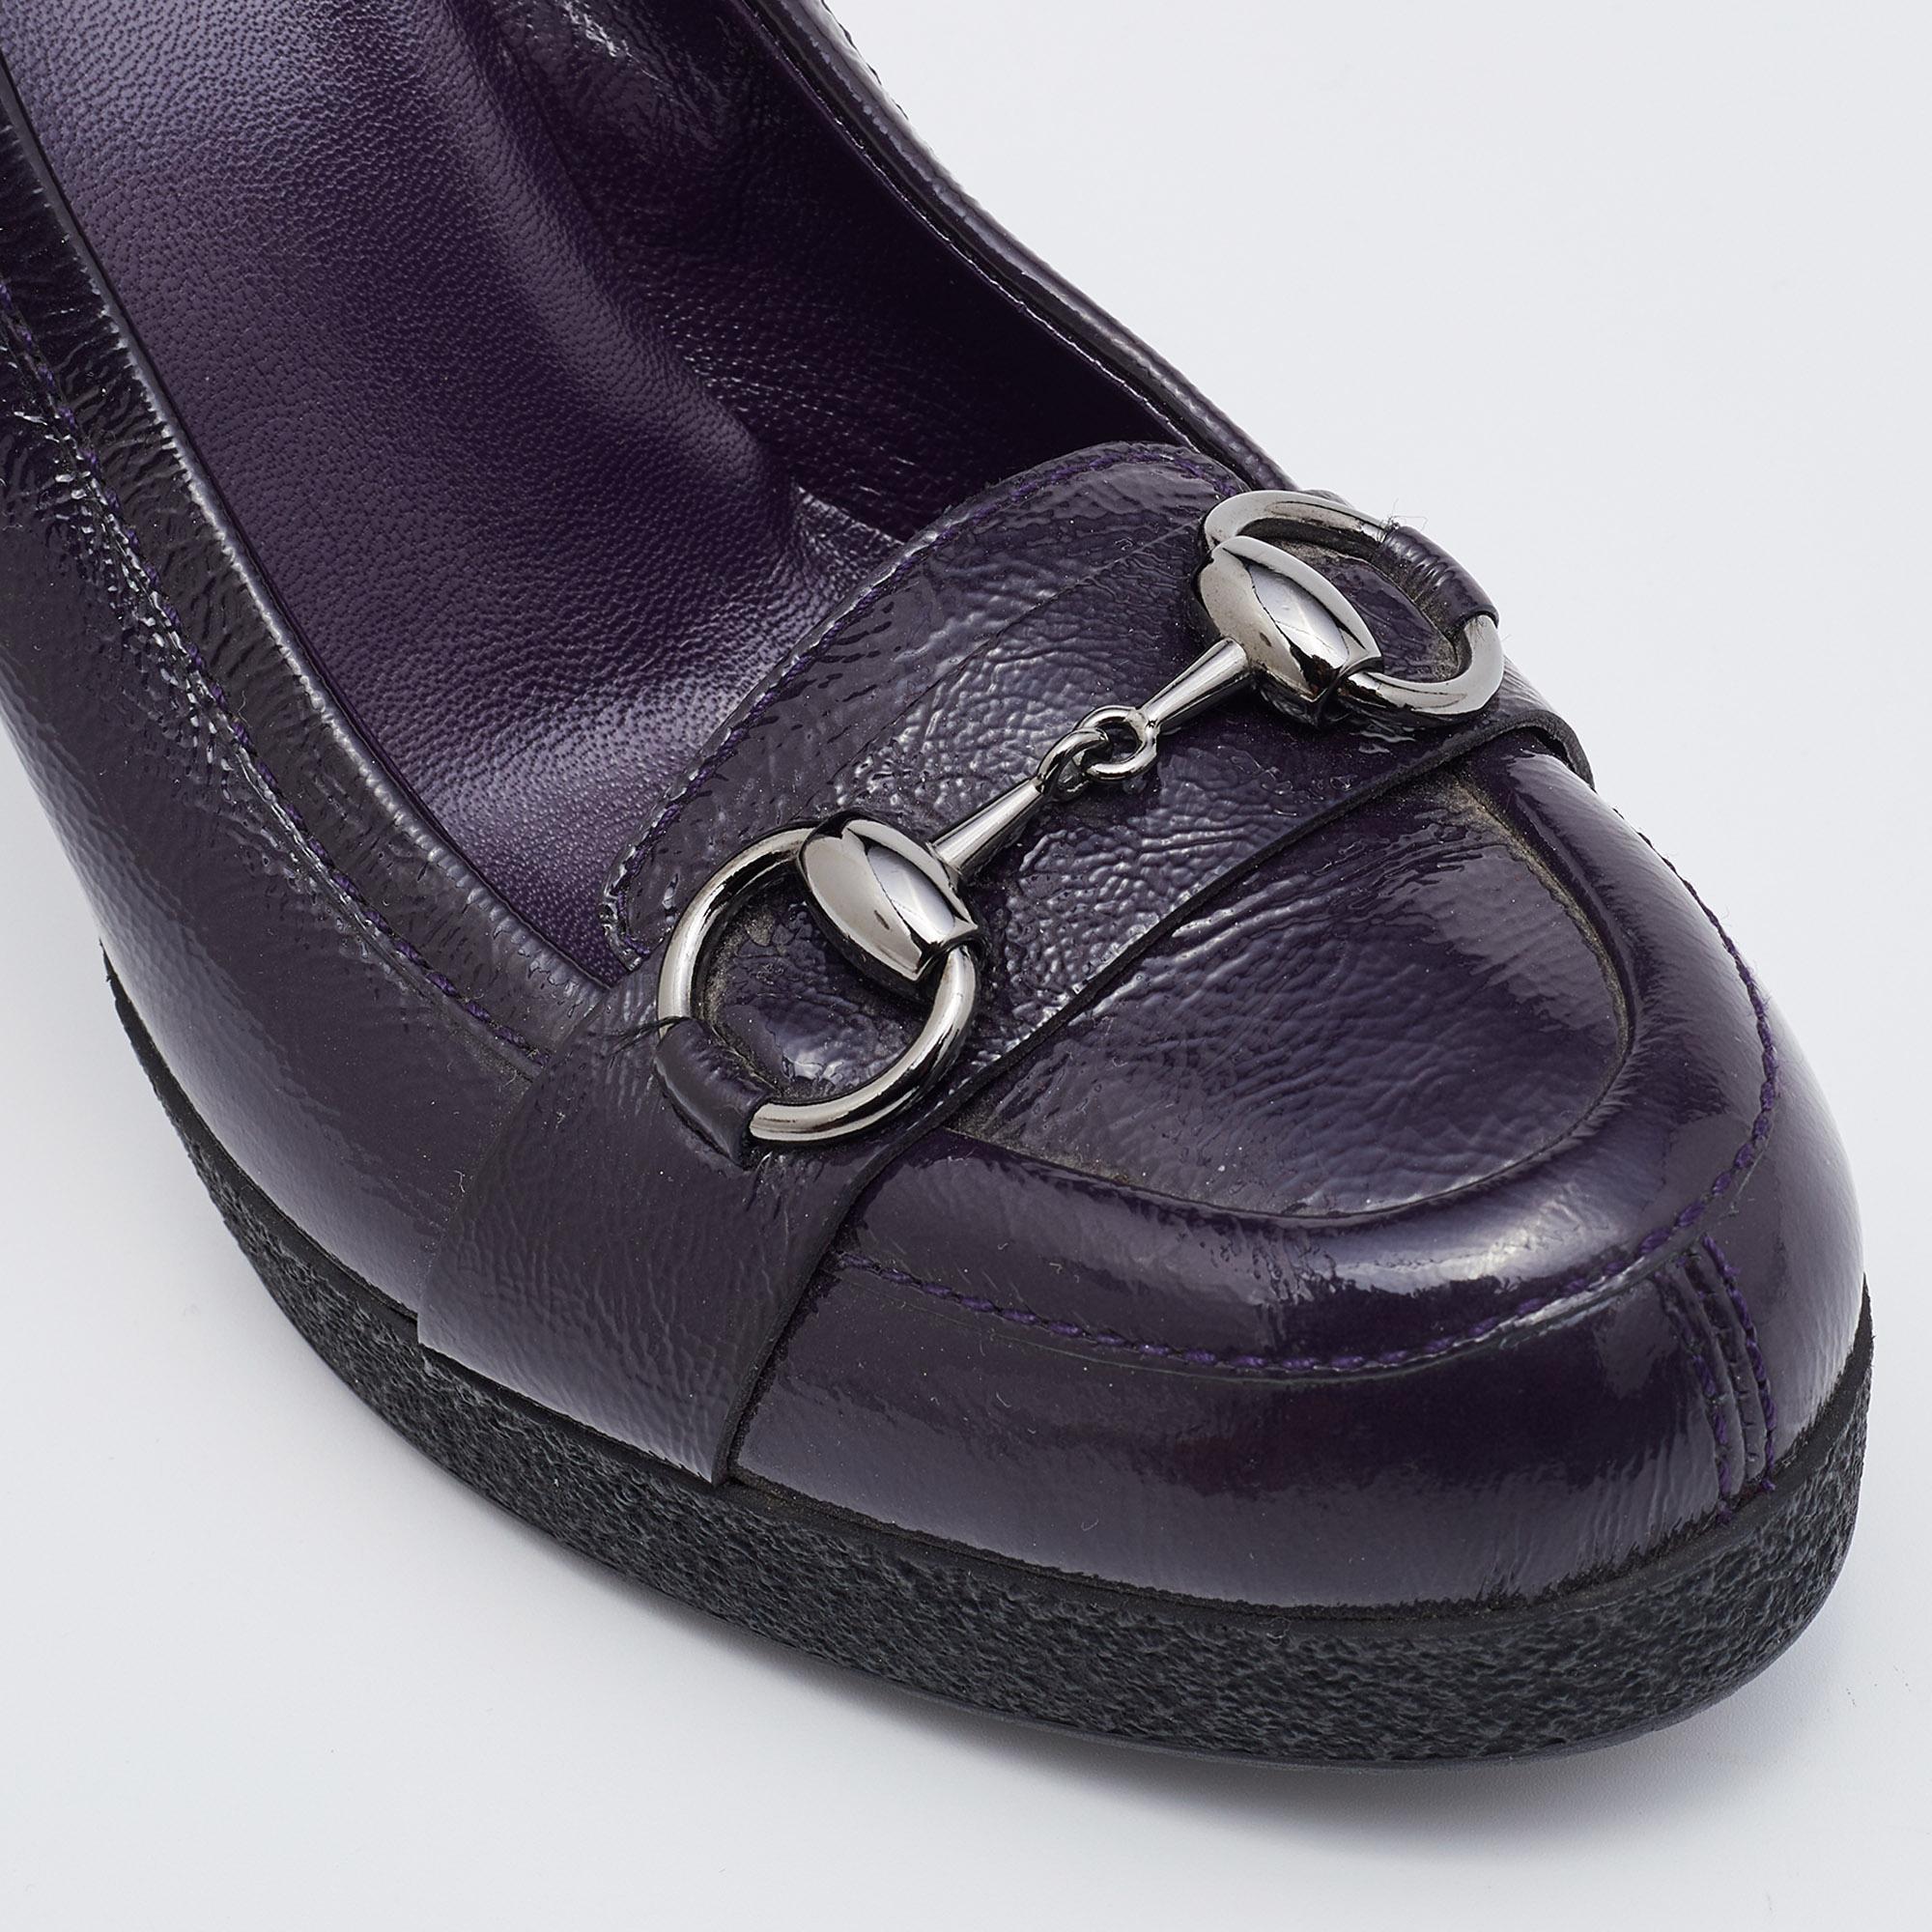 Gucci Purple Patent Leather Horsebit Platform Loafer Pumps Size 37.5 3